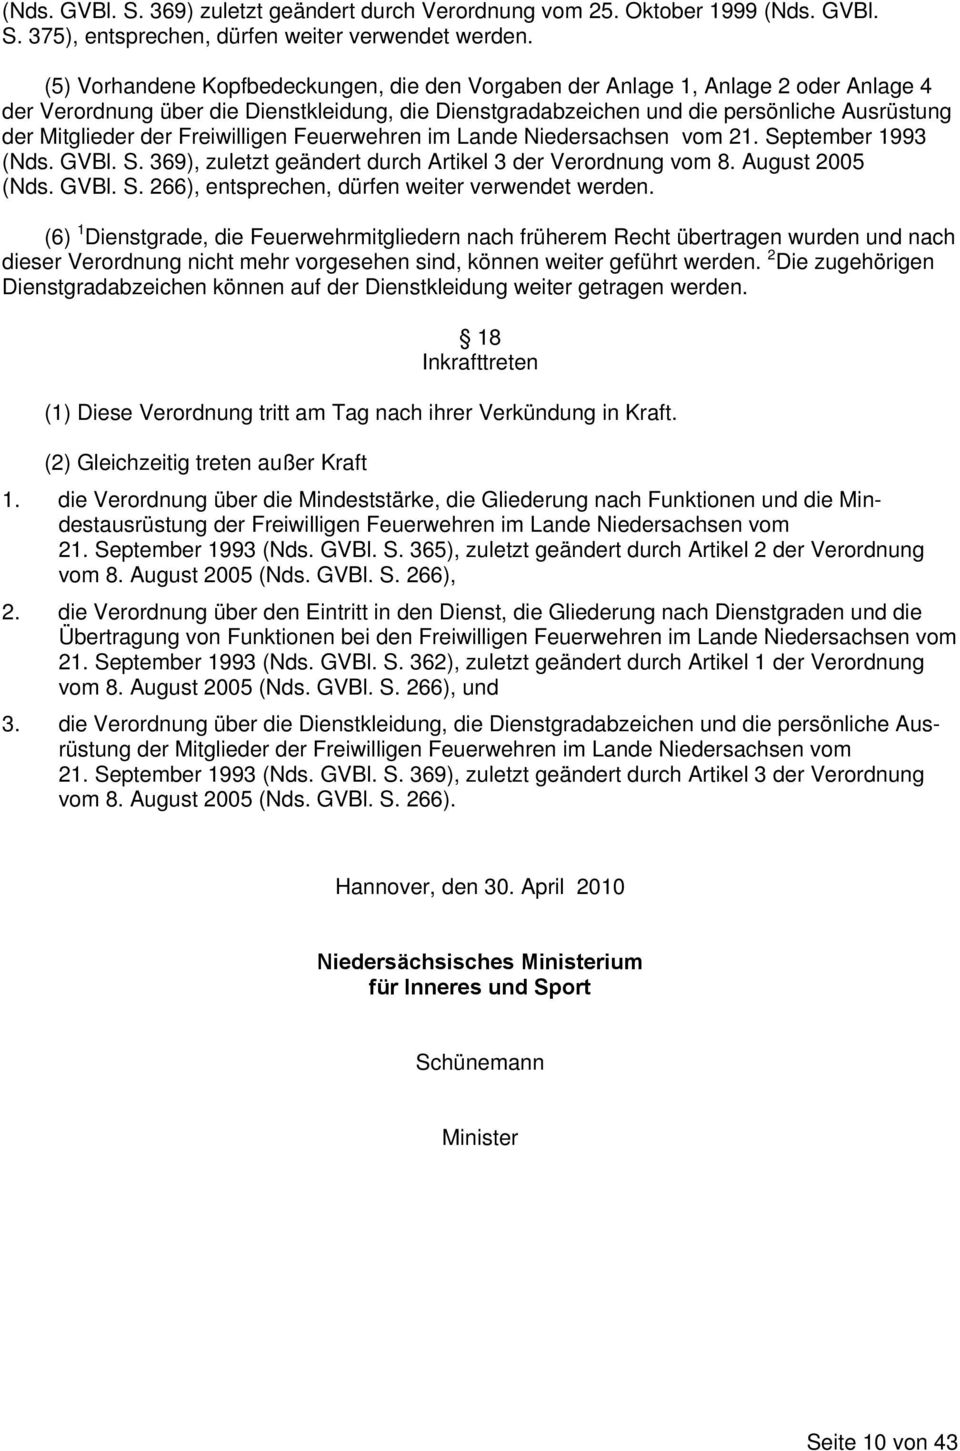 Freiwilligen Feuerwehren im Lande Niedersachsen vom 21. September 1993 (Nds. GVBl. S. 369), zuletzt geändert durch Artikel 3 der Verordnung vom 8. August 2005 (Nds. GVBl. S. 266), entsprechen, dürfen weiter verwendet werden.